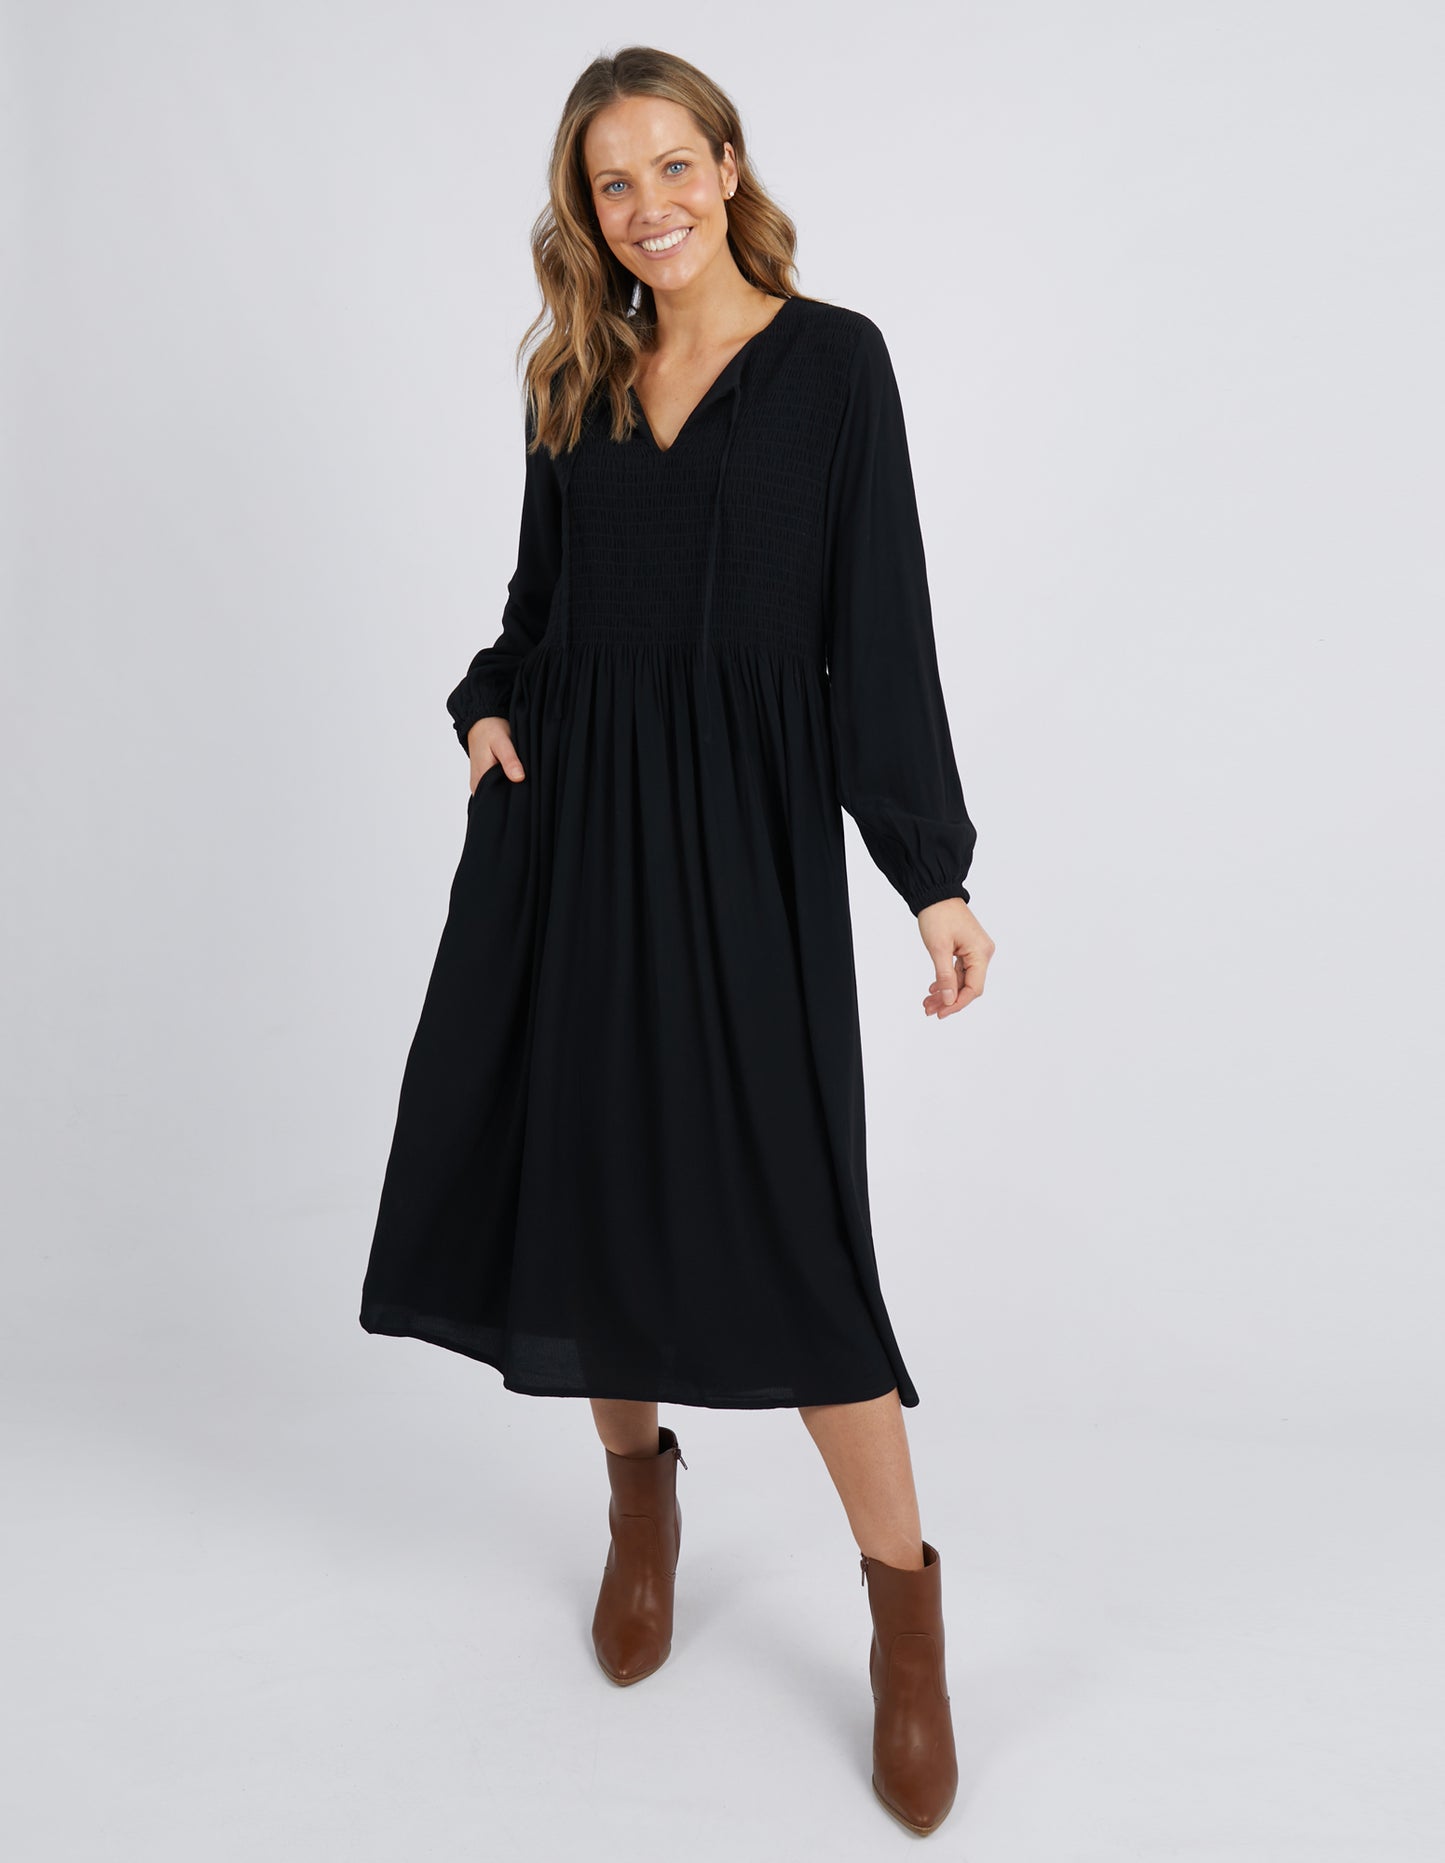 Lottie Midi Dress - Black - Elm Lifestyle